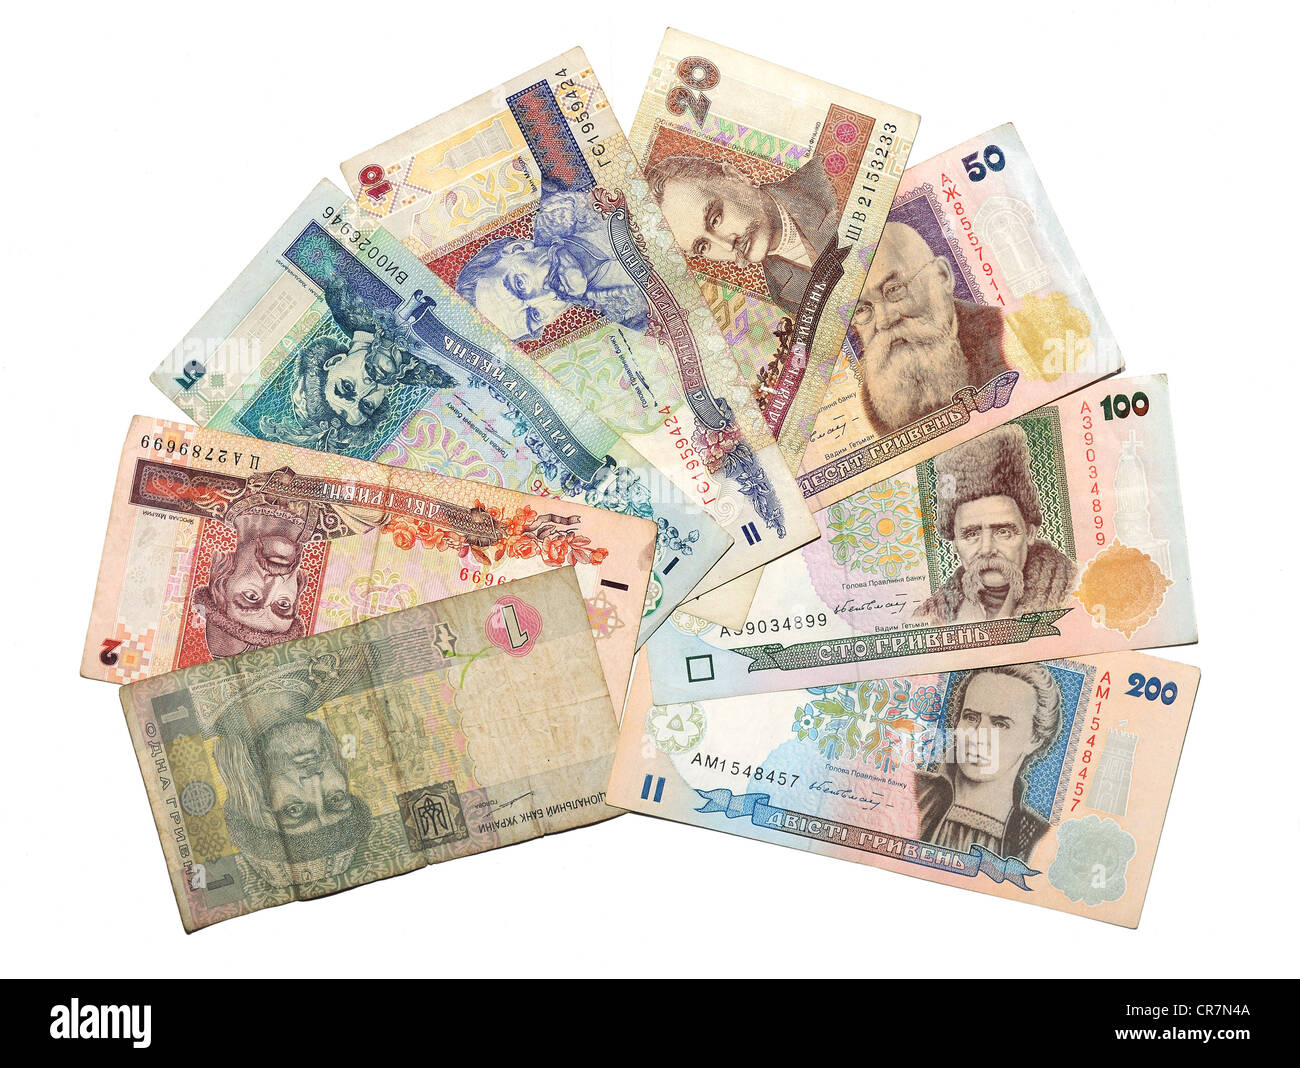 Historische Banknoten, ukrainische Hrywen 1994-2004 Stockfoto